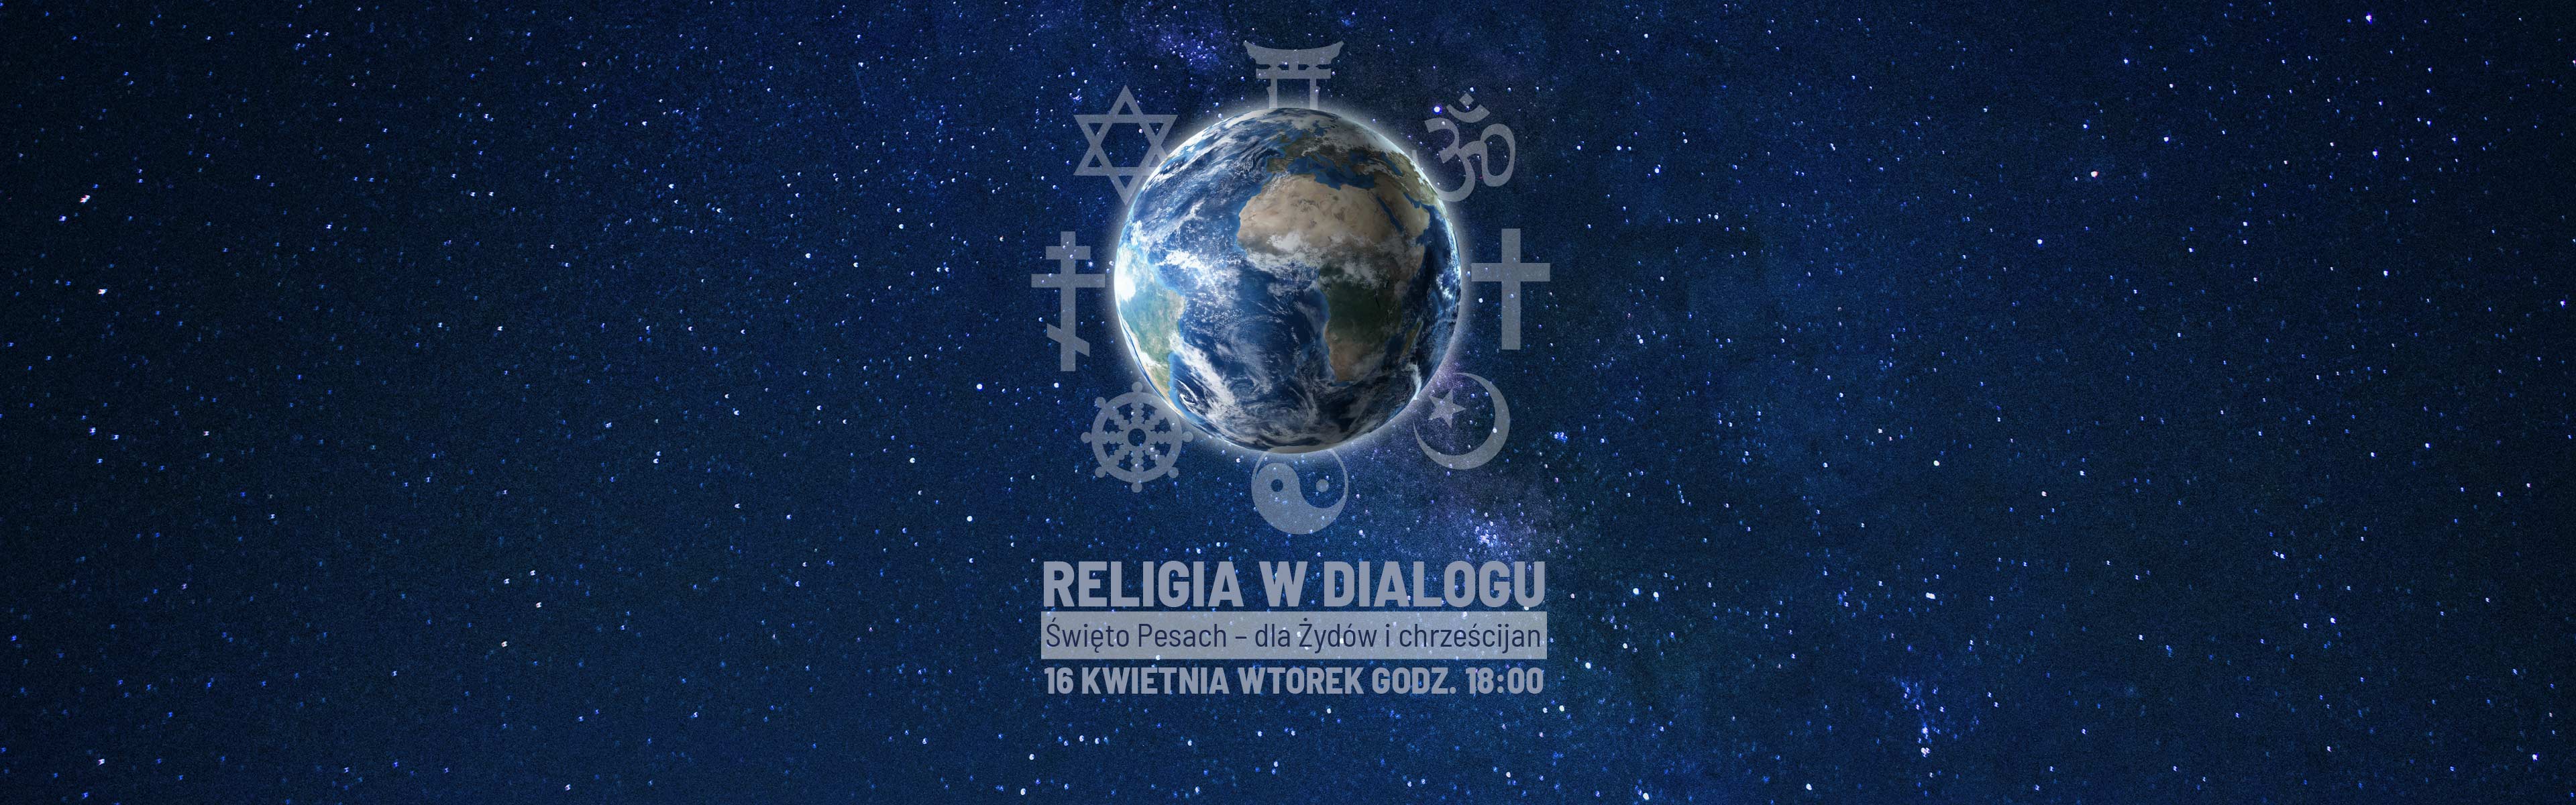 religia_w_dialogu_PESACH_SLIDER